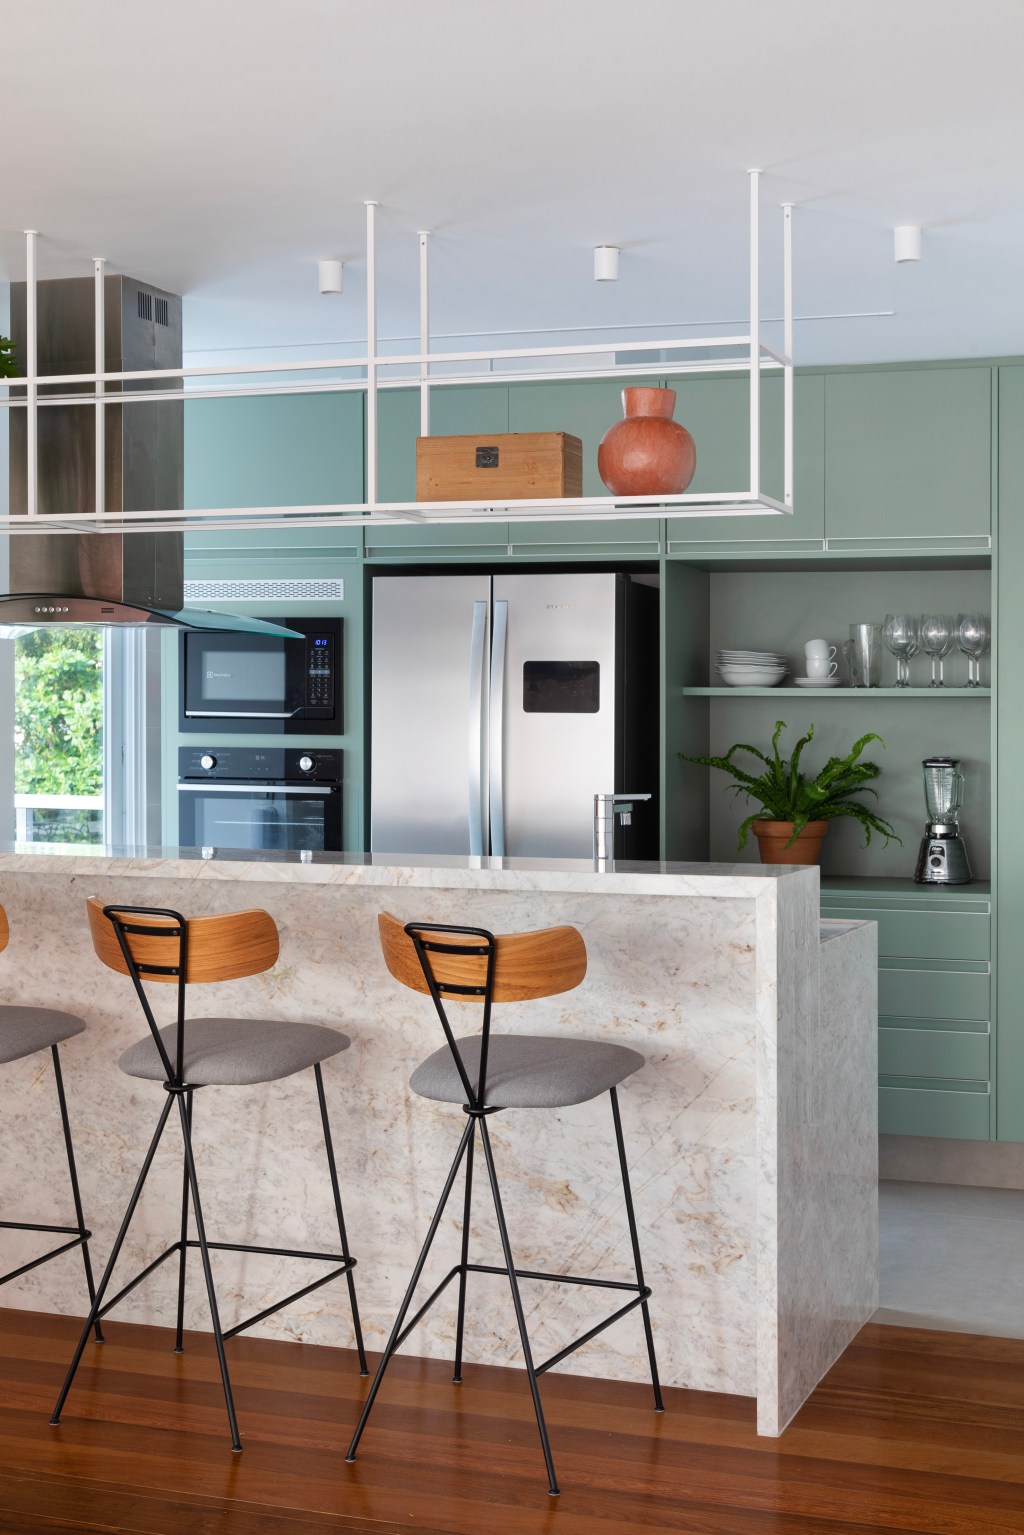 Paredes brancas, piso de madeira e armários verdes marcam apê de 280 m². Projeto Beta Arquitetura. Na foto, cozinha americana com armários verdes.